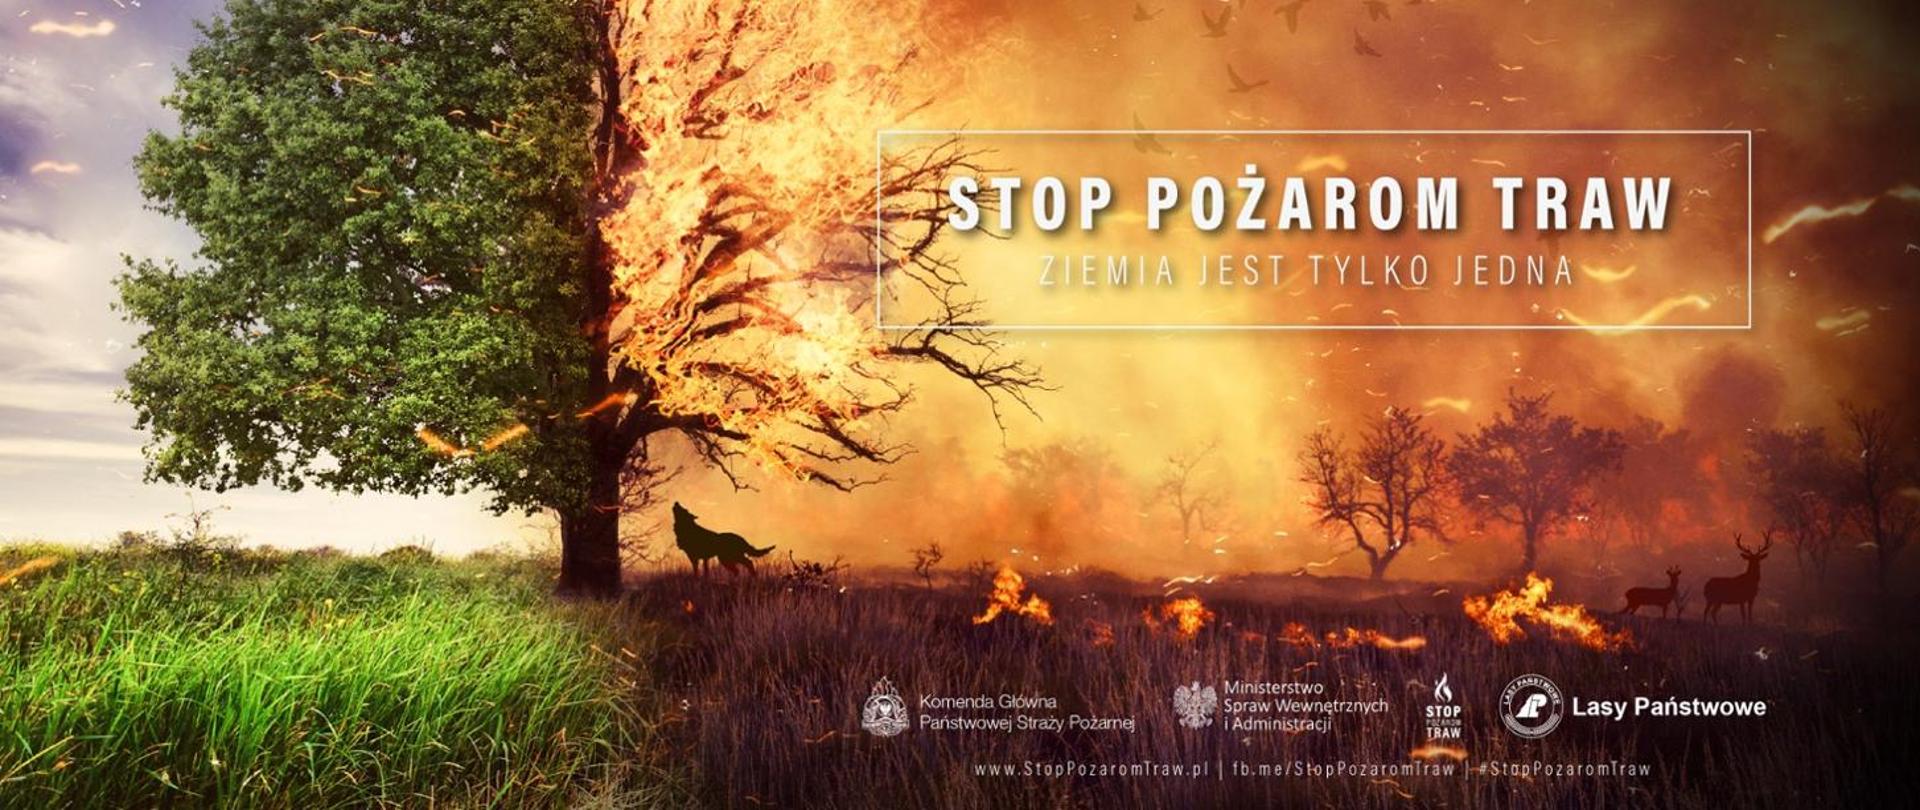 Baner kampanii społecznej "STOP pożarom traw" prezentujący zagrożenia powstałe w wyniku pożaru